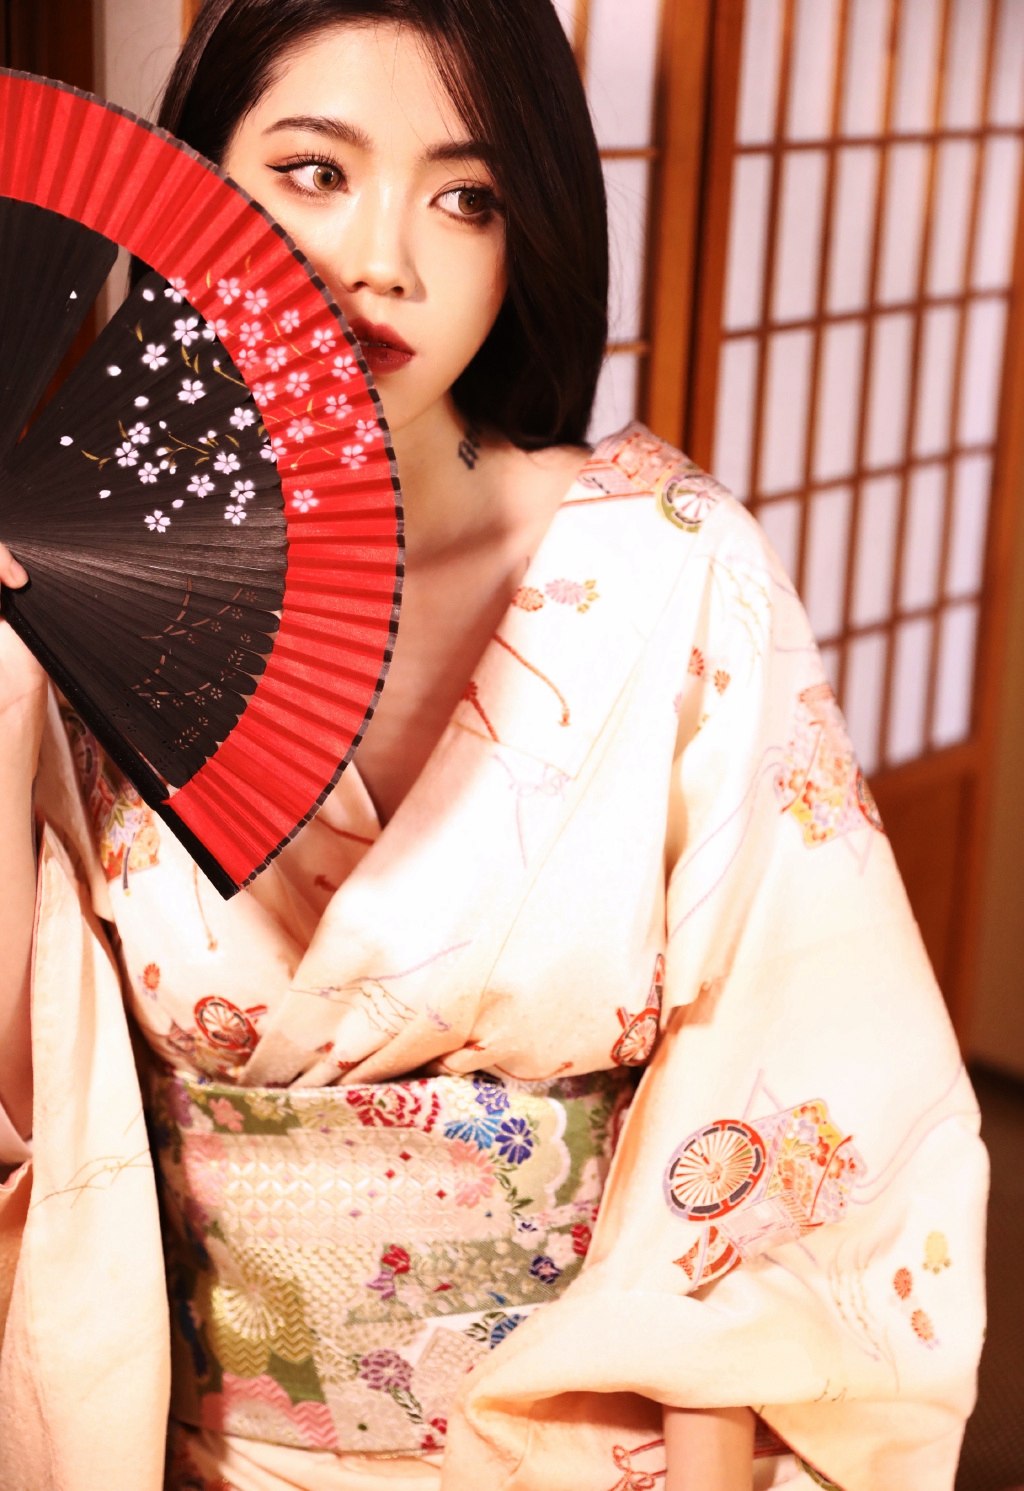 性感美女御姐日本和服妩媚诱惑私人摄影  第2张